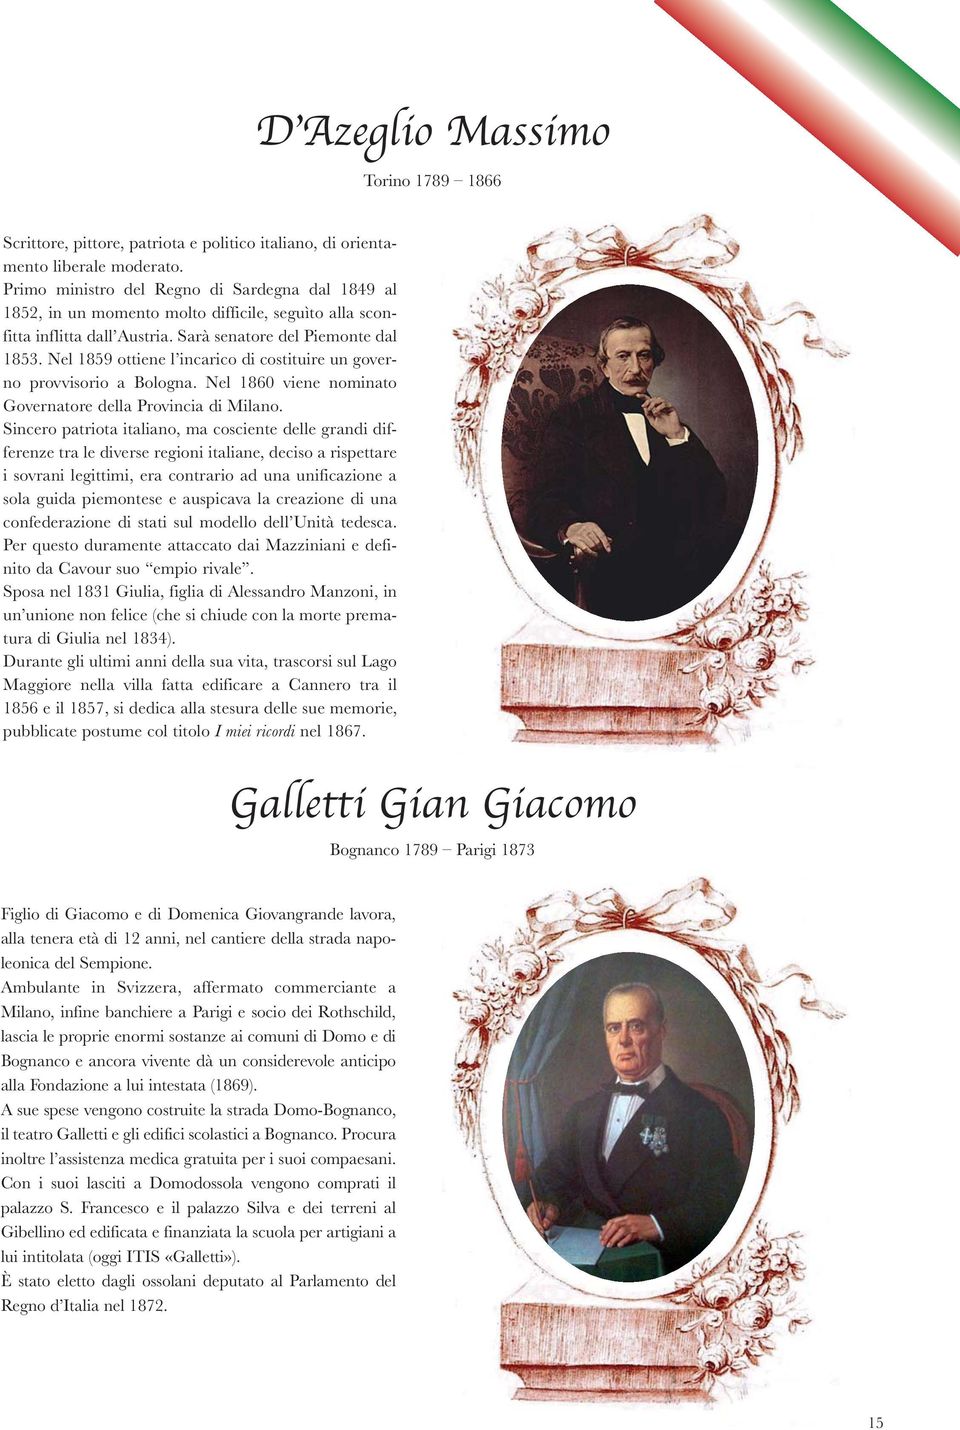 Nel 1859 ottiene l incarico di costituire un governo provvisorio a Bologna. Nel 1860 viene nominato Governatore della Provincia di Milano.